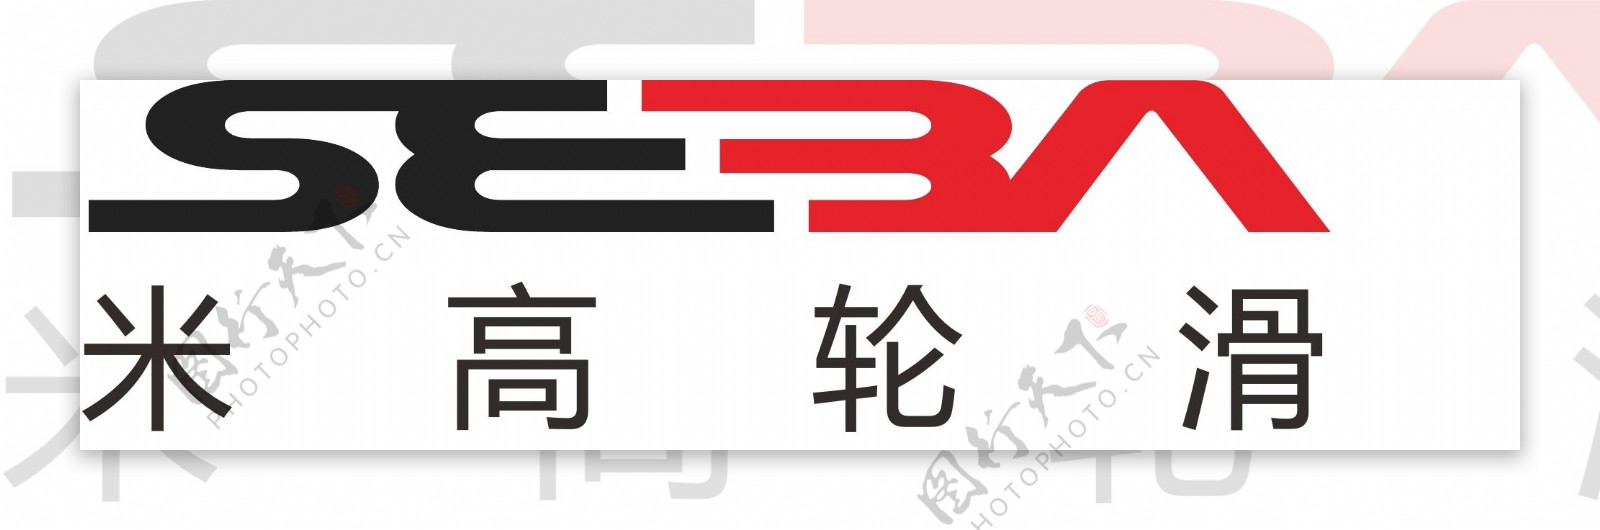 米高轮滑logo